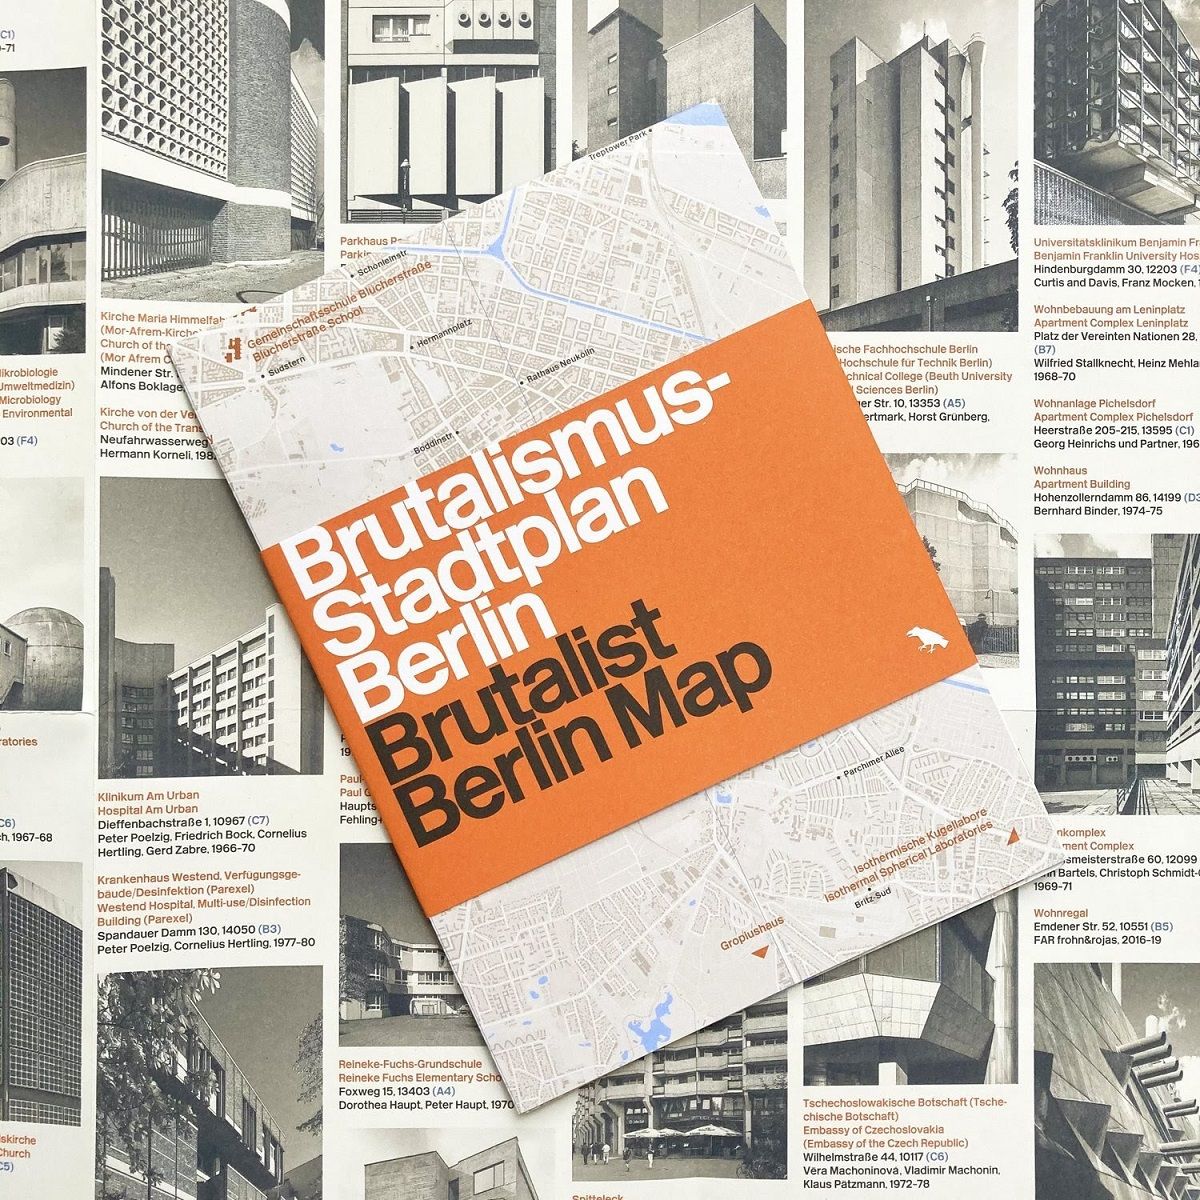 Hình ảnh độc đáo về kiến trúc Brutalism của Berlin từ những năm 1950 cho đến ngày nay